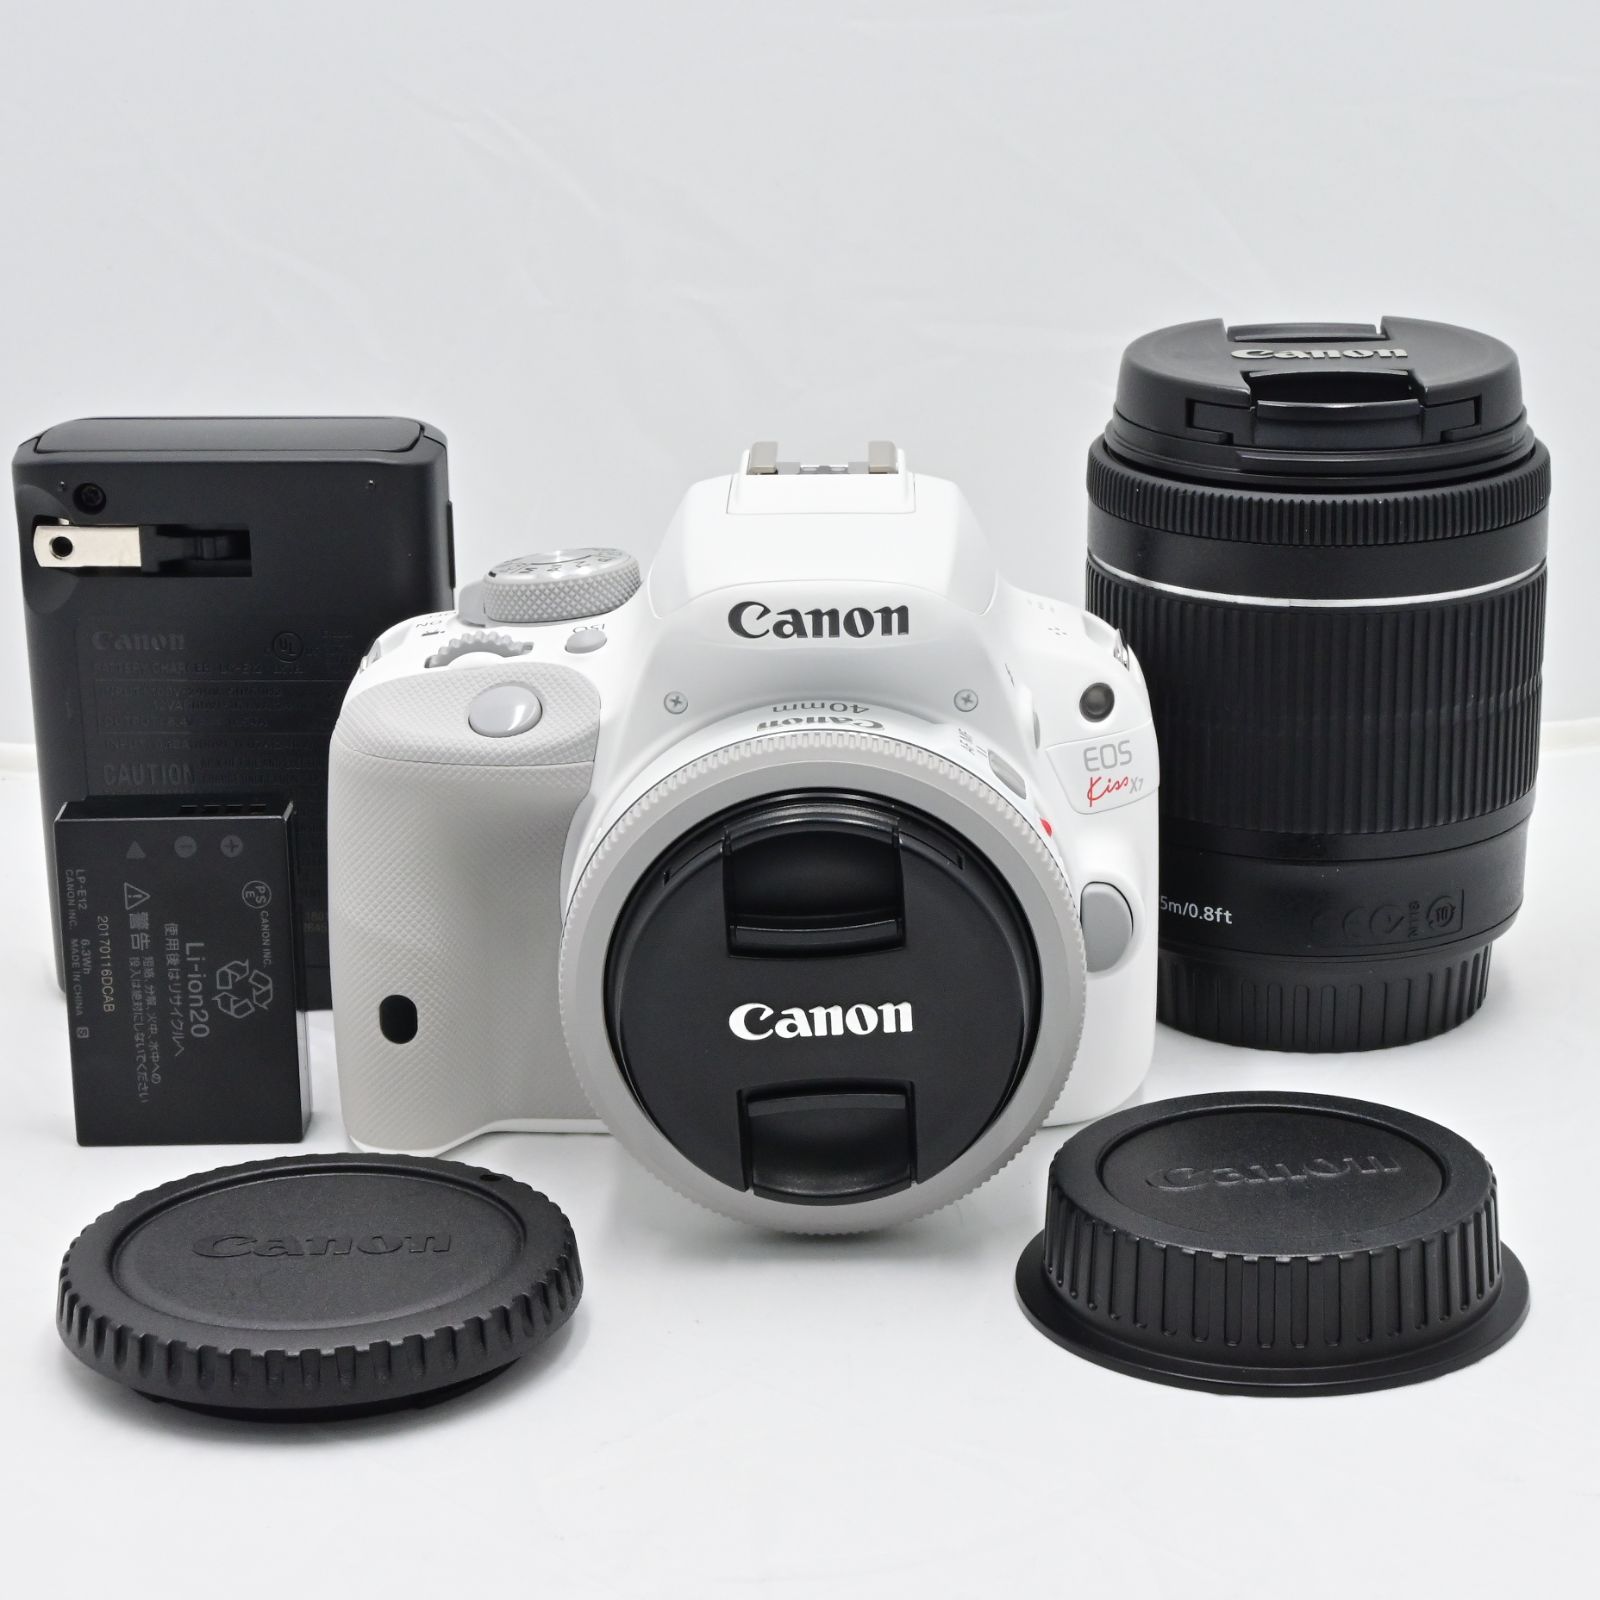 Canon デジタル一眼レフカメラ EOS Kiss X7 レンズキット EF-S18-55mm F3.5-5.6 IS STM付属 KISSX7-1 - 5